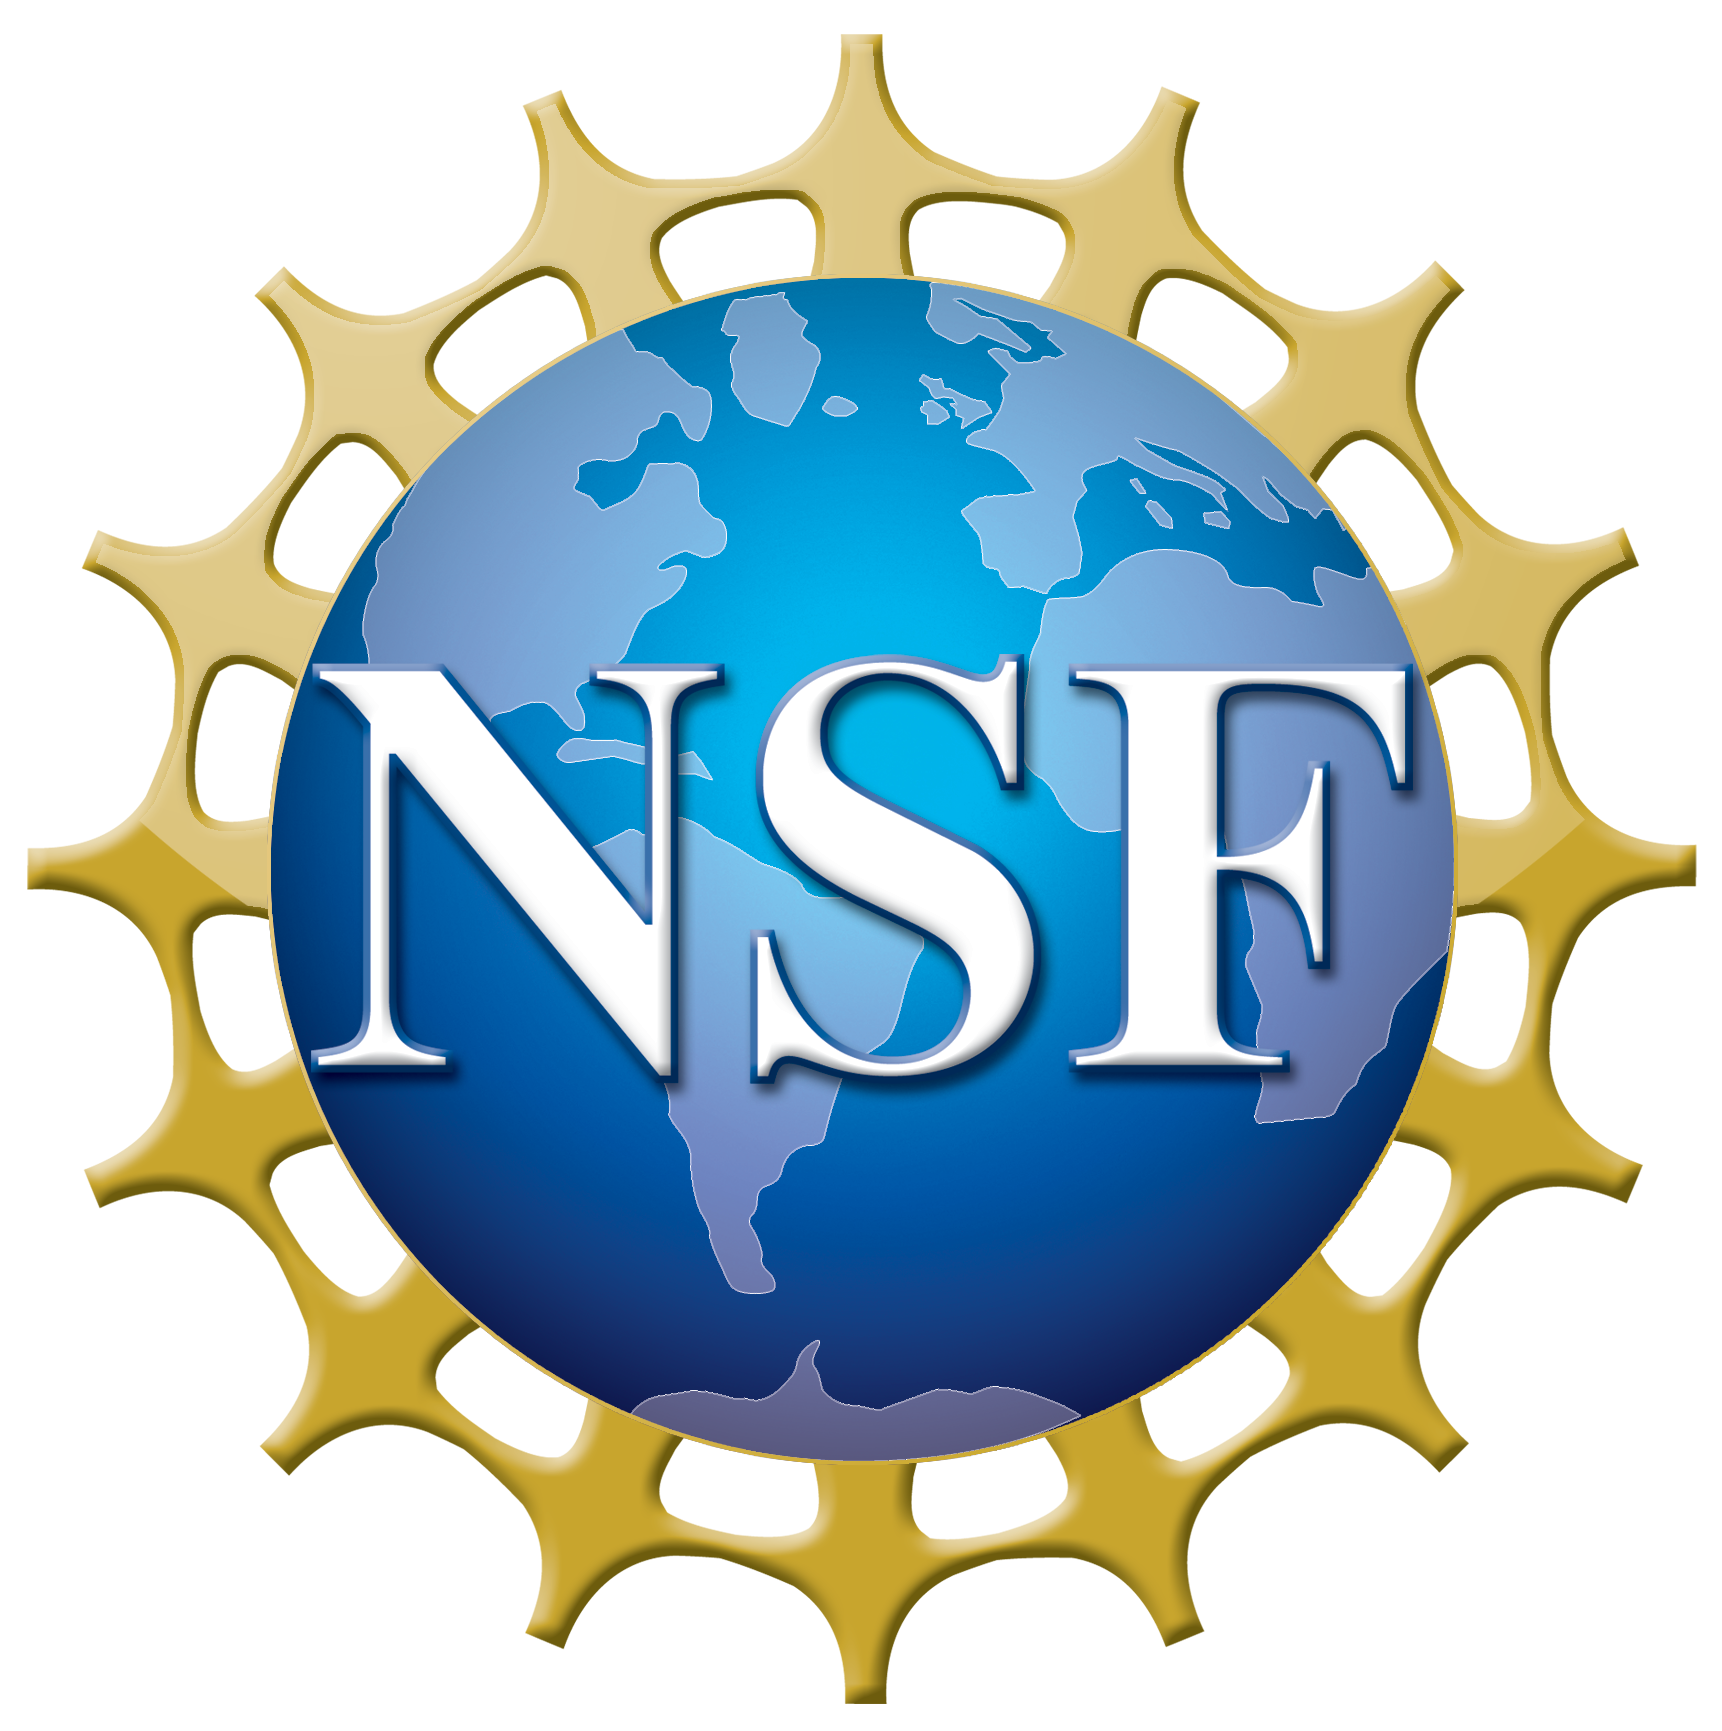 logo_nsf.png